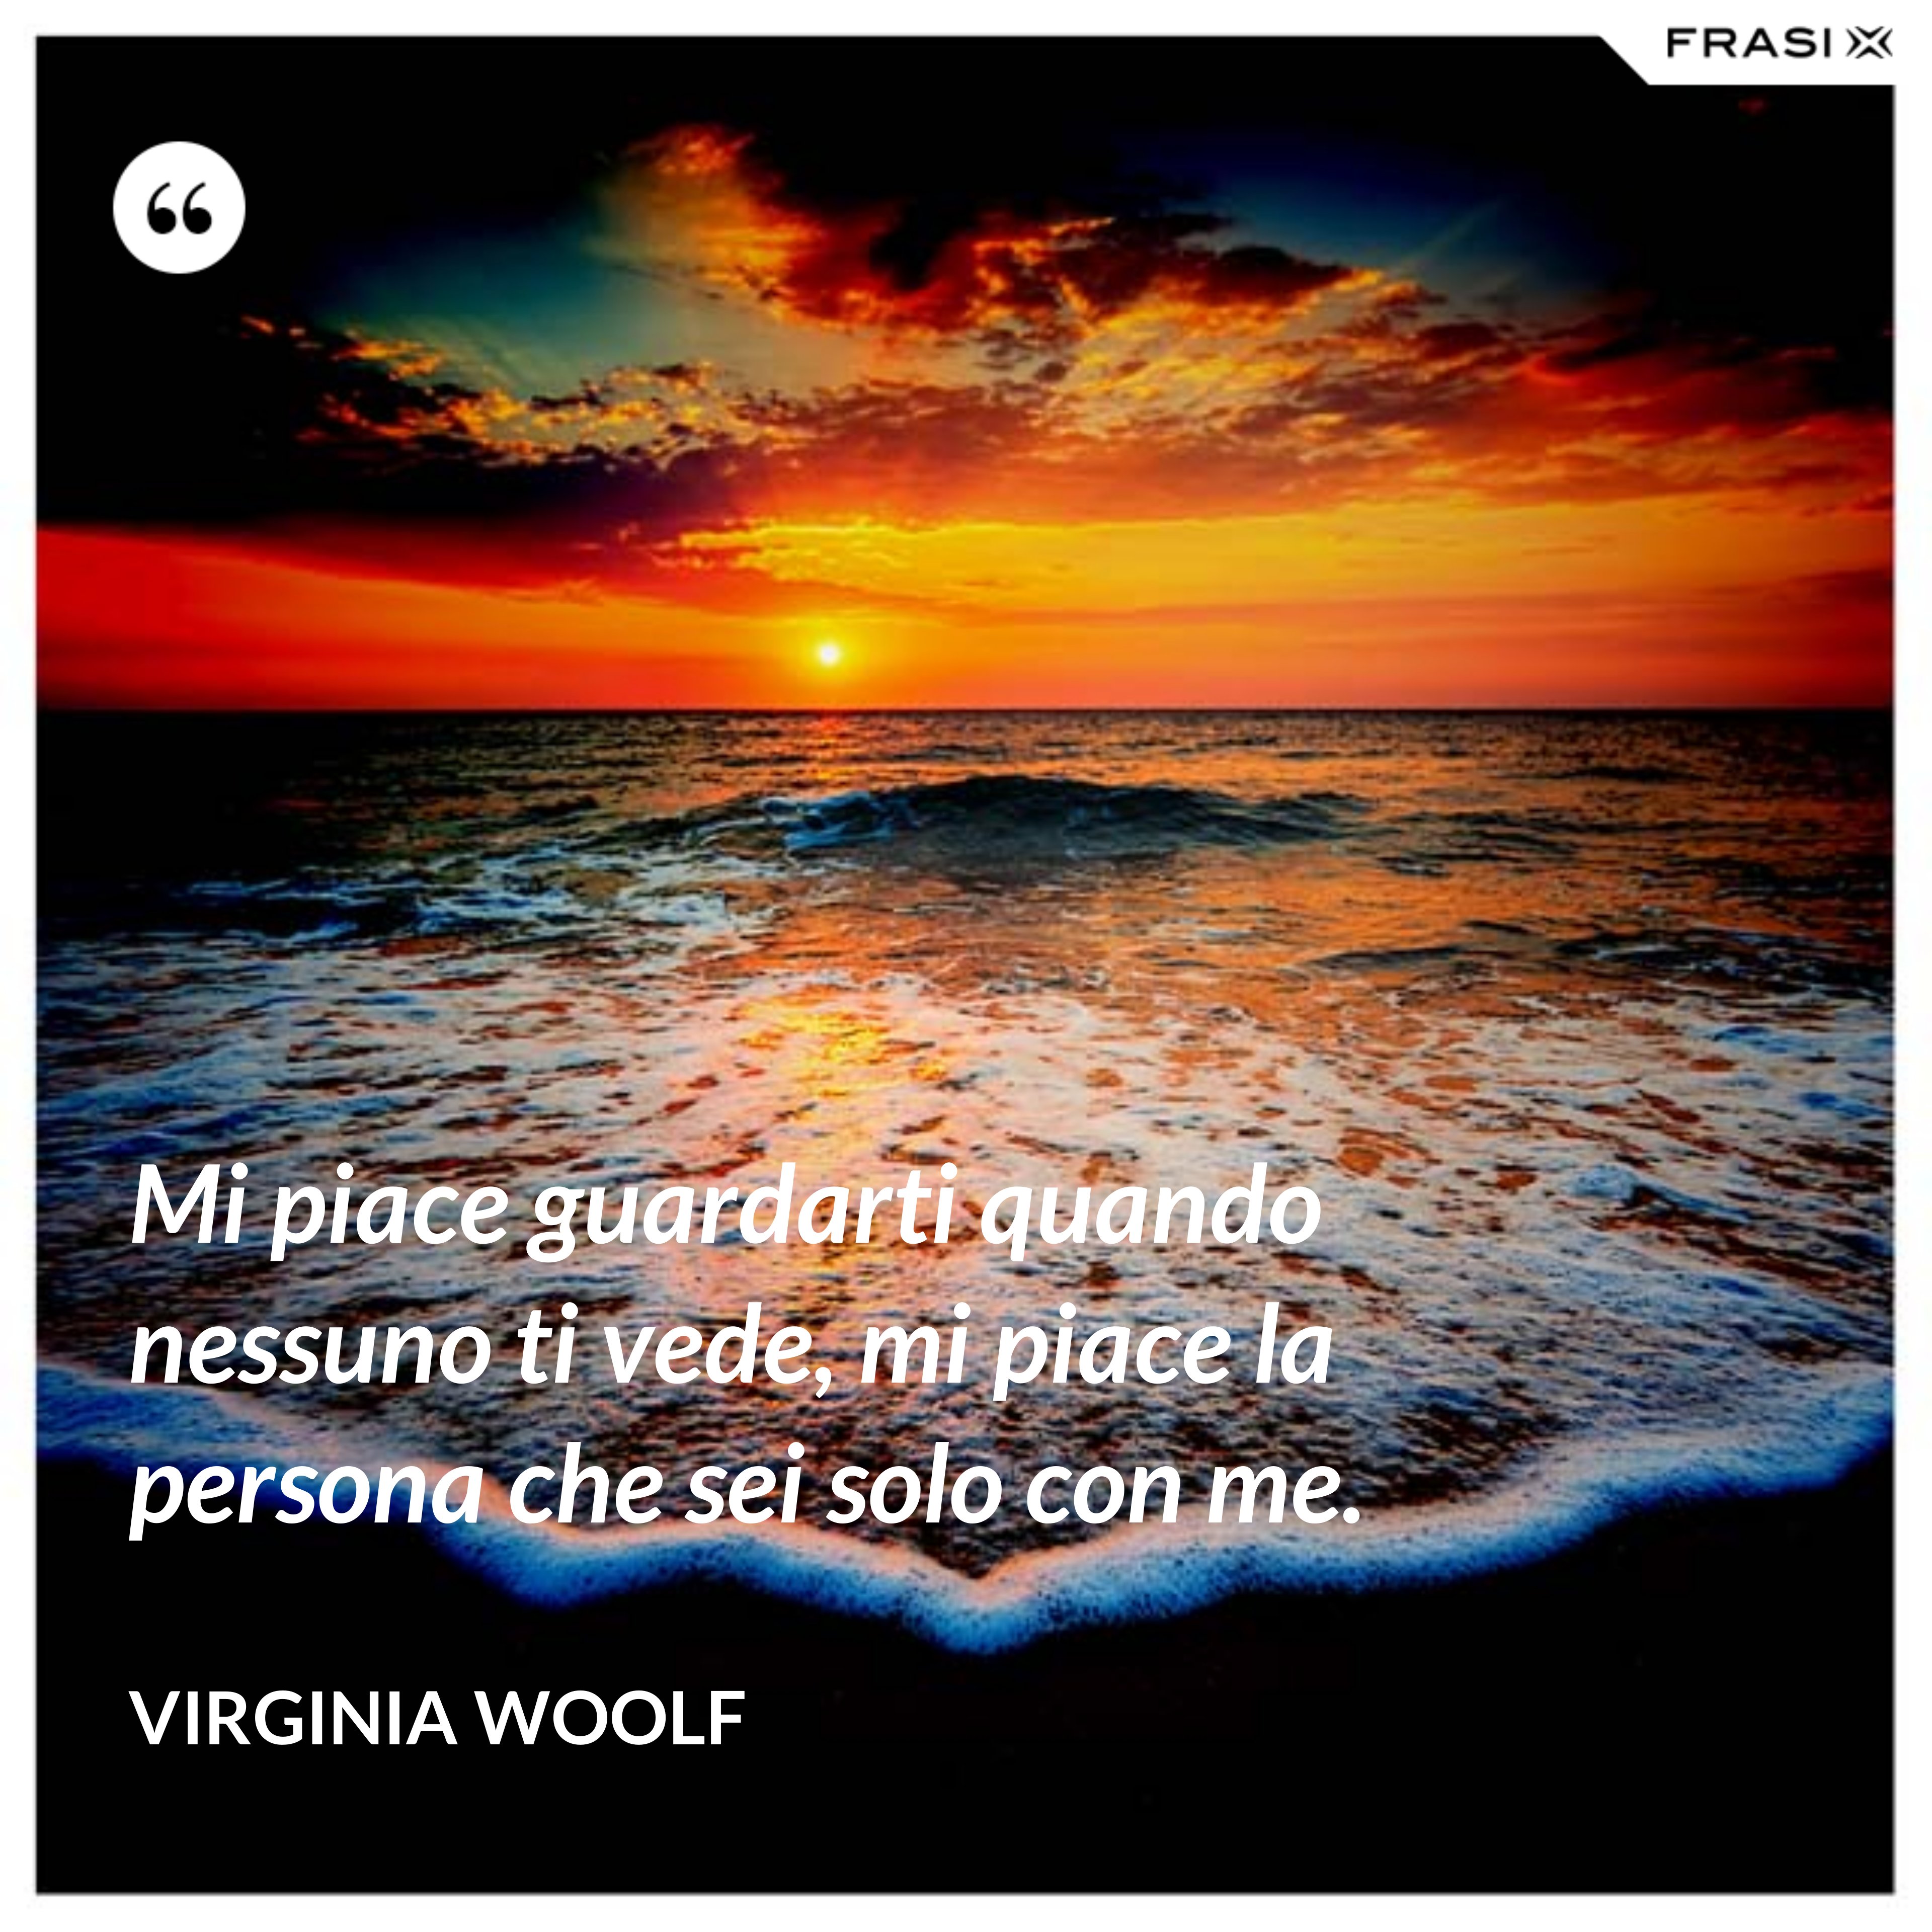 Mi piace guardarti quando nessuno ti vede, mi piace la persona che sei solo con me. - Virginia Woolf